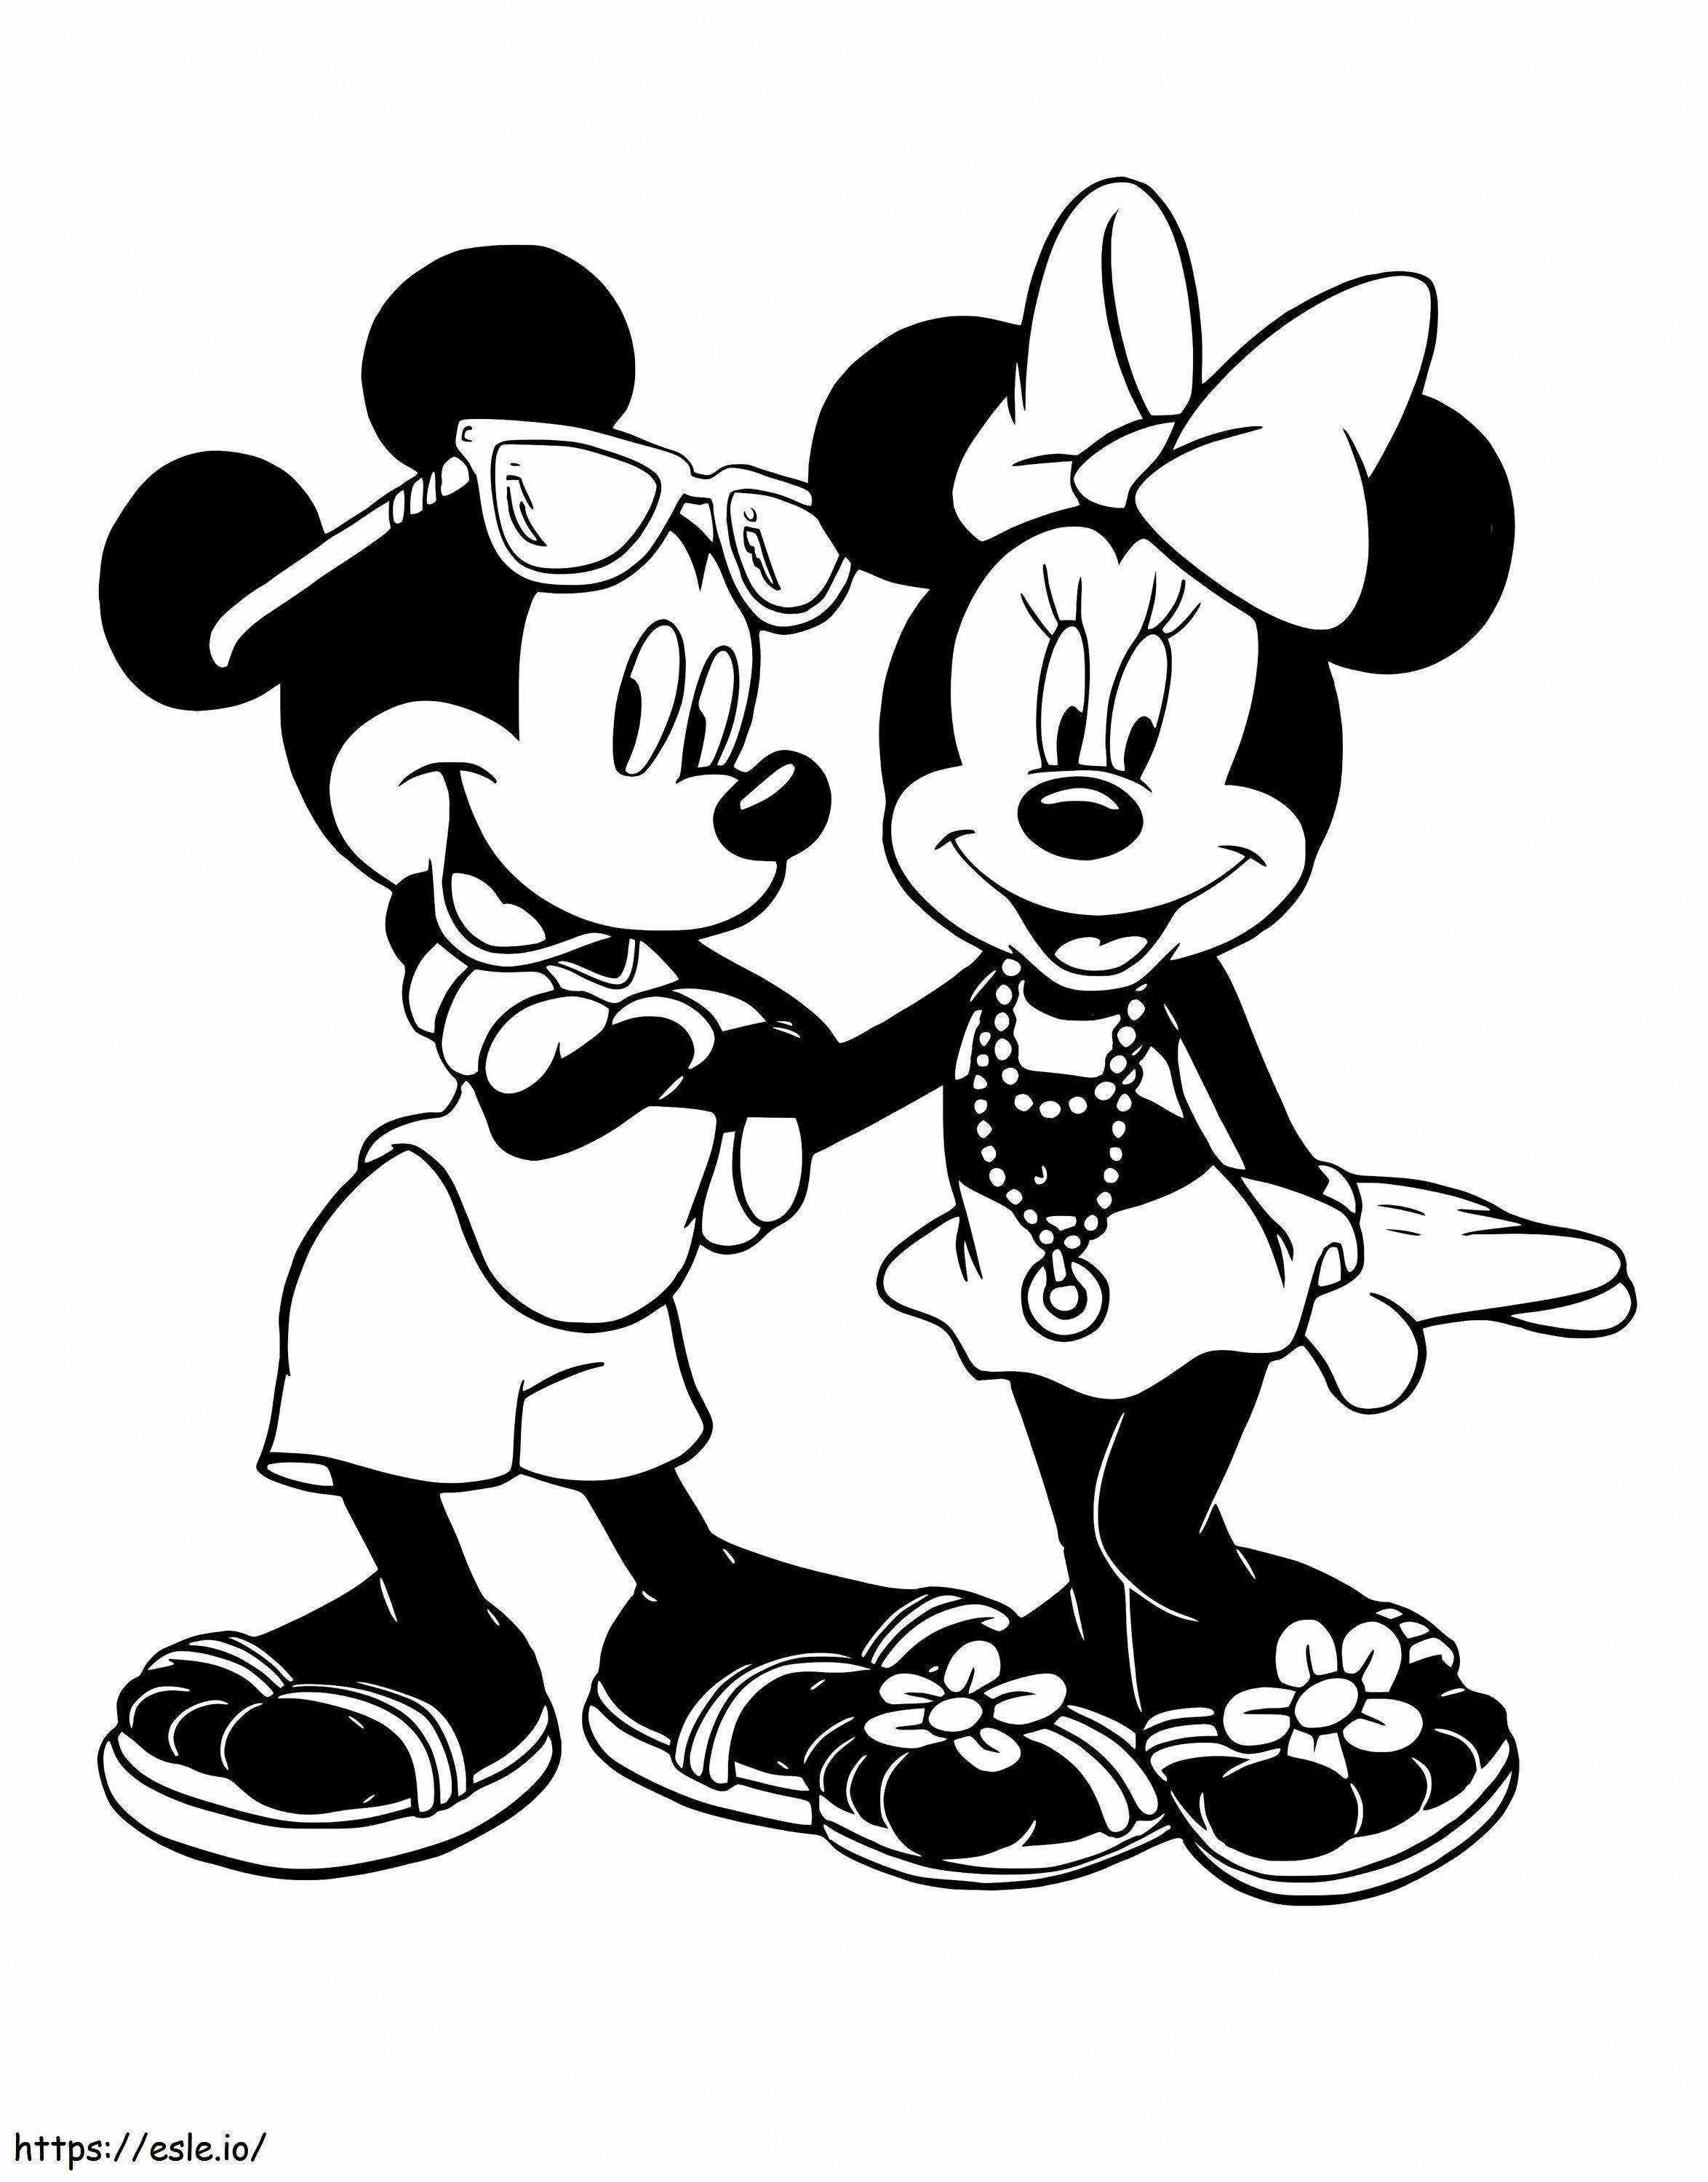 Oma Mickey und Minnie Mouse ausmalbilder